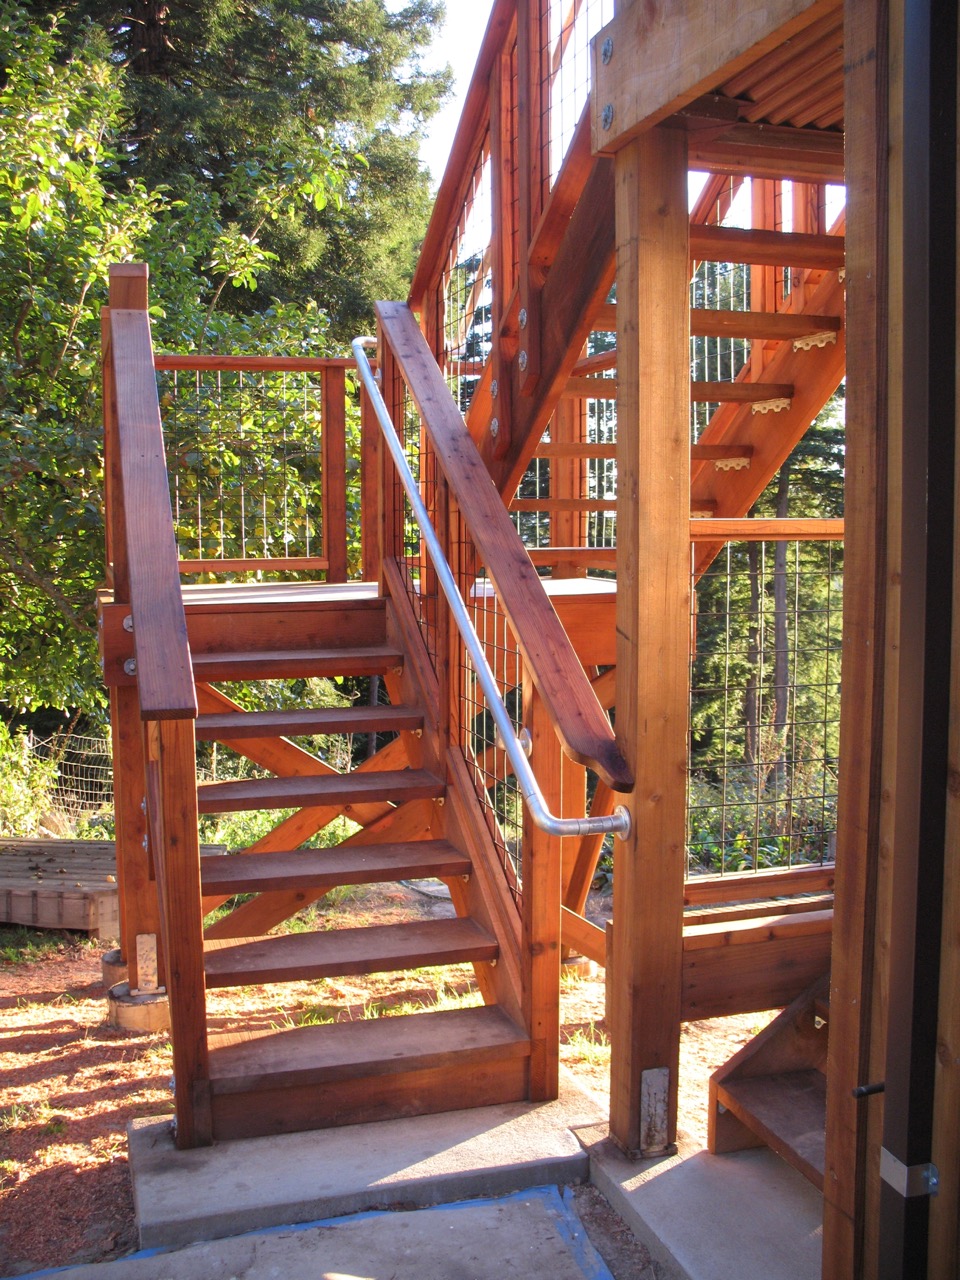 Stairway detail